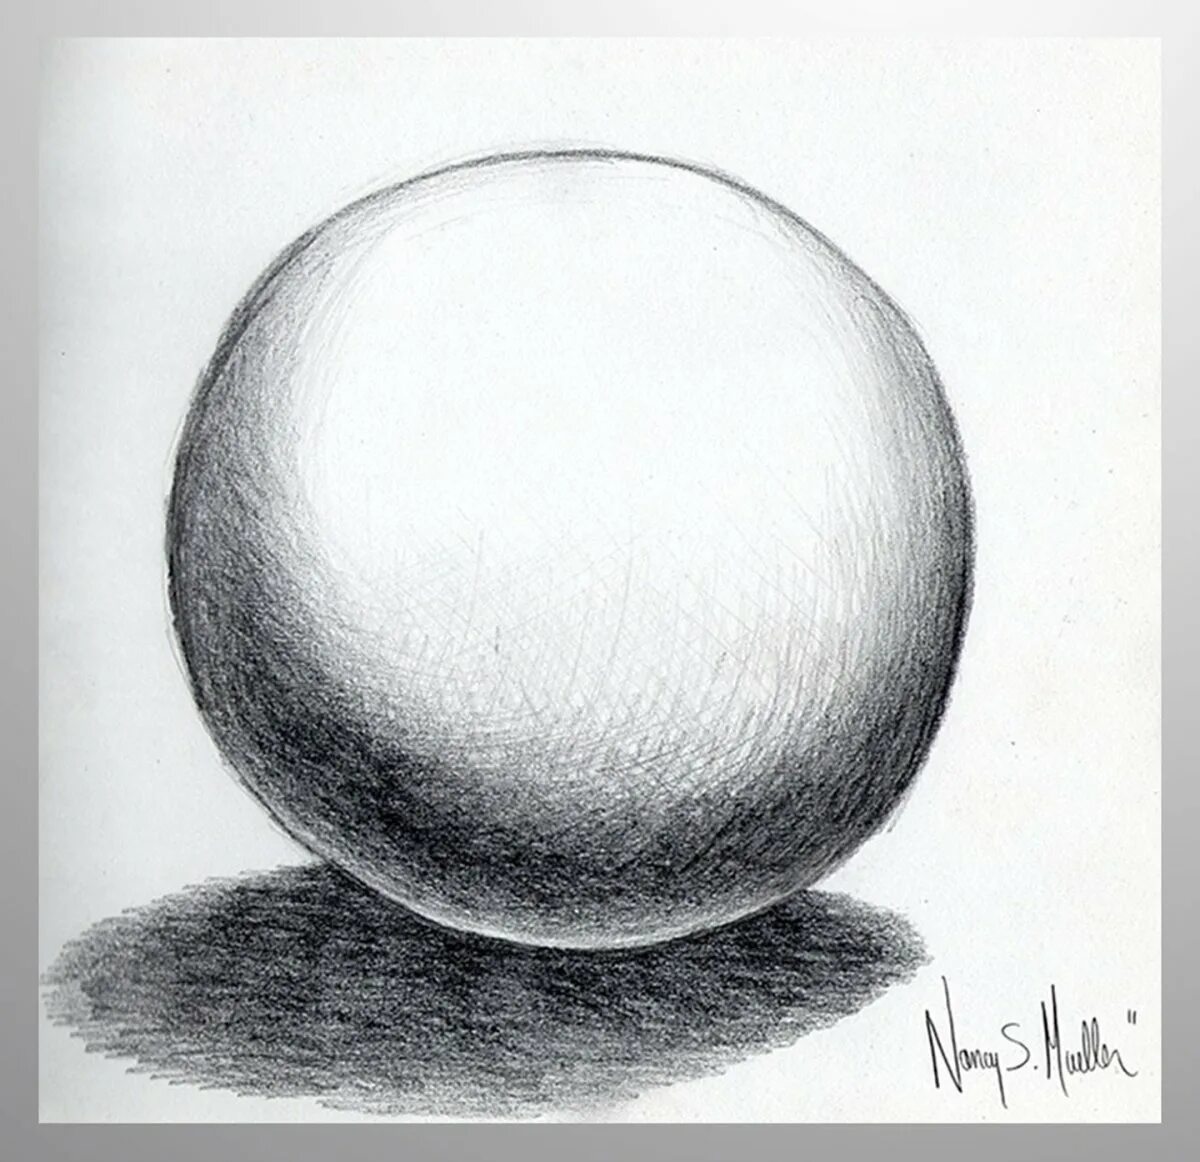 Шар для рисования с натуры. Рисование шара. Объемный шар рисунок. Рисунок шара карандашом с тенью. Нарисовать шар рисунком